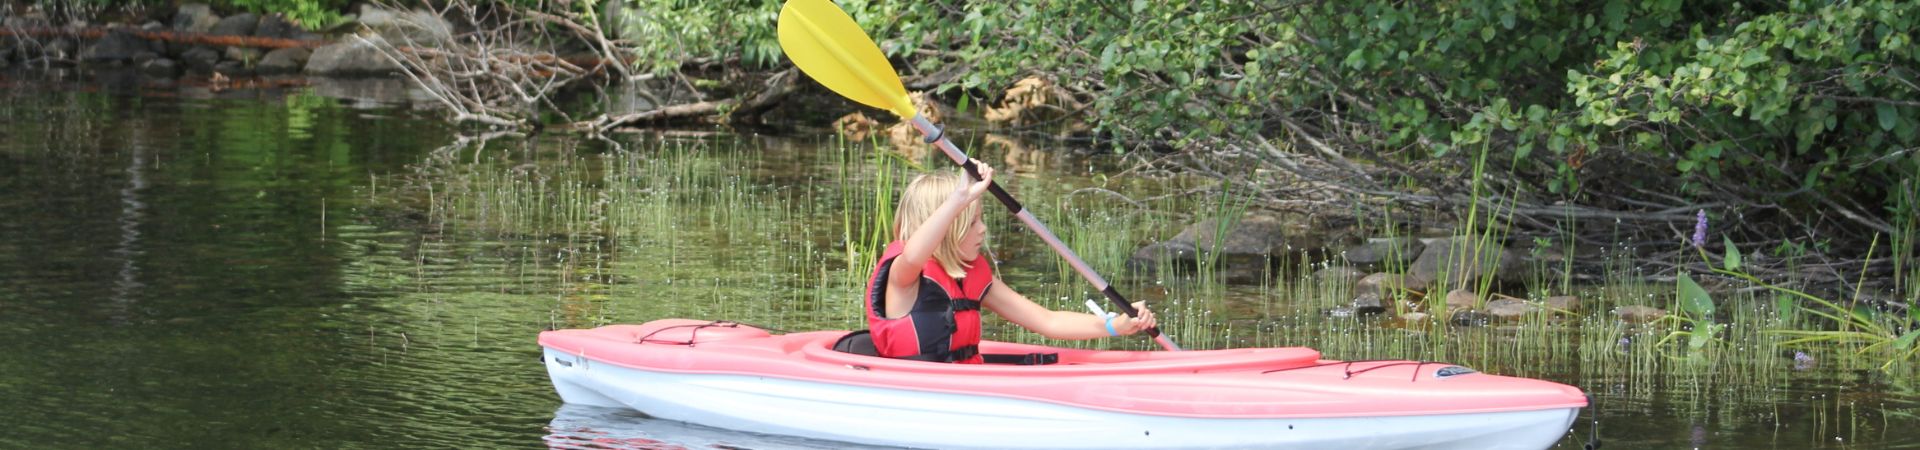  Girl in kayak on the lake 